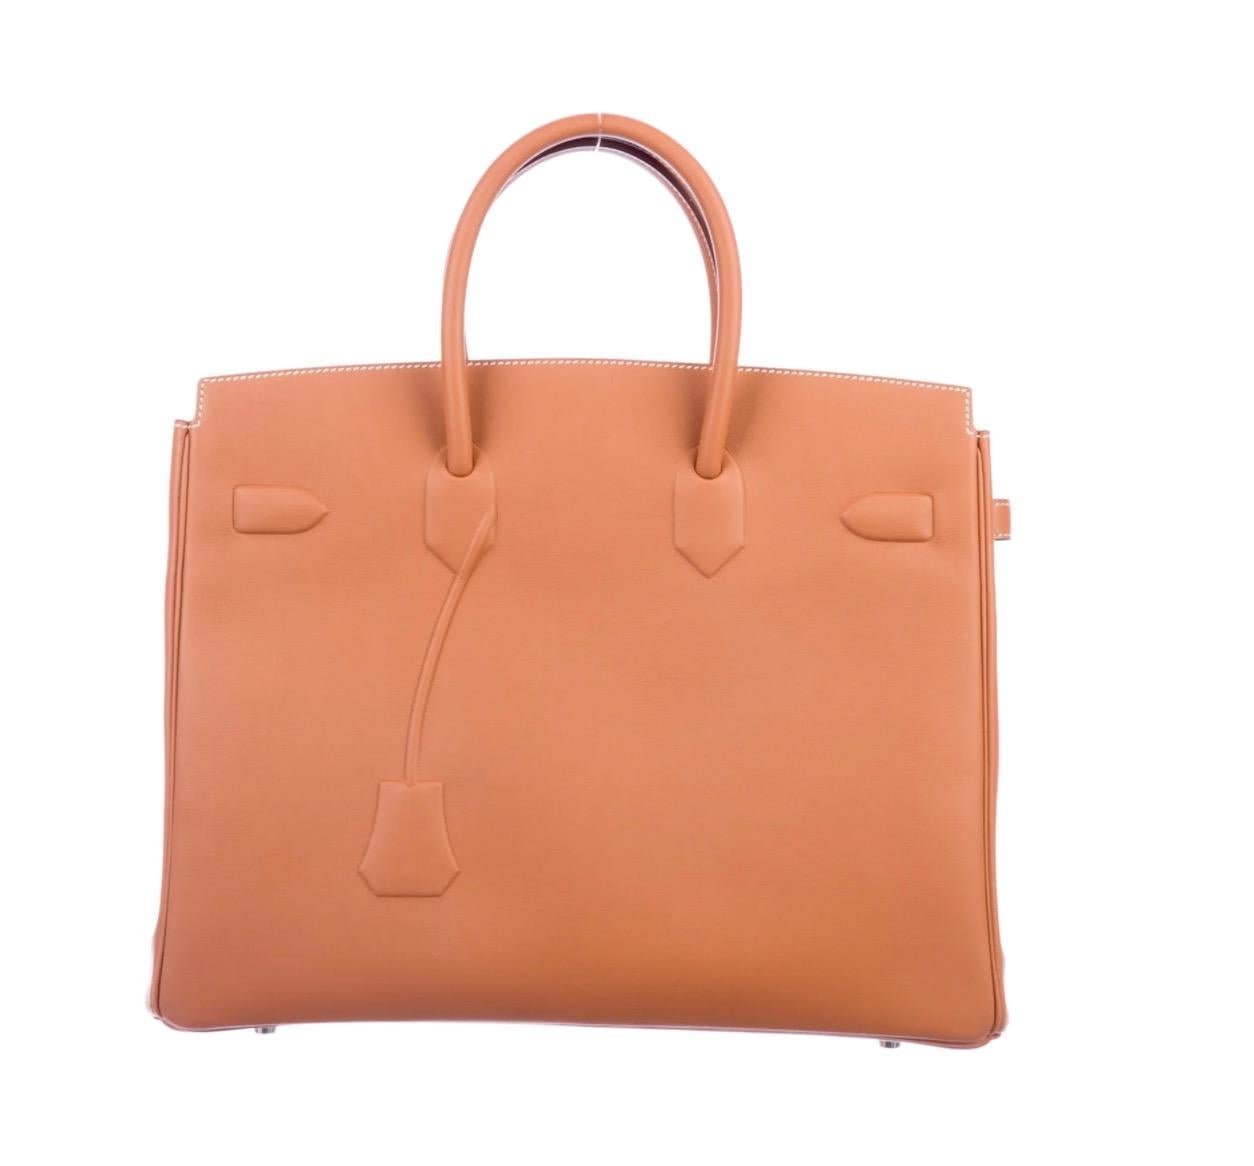 Women's Hermes NEW Birkin 35 Cognac Brown Palladium Top Handle Satchel Tote Bag in Box